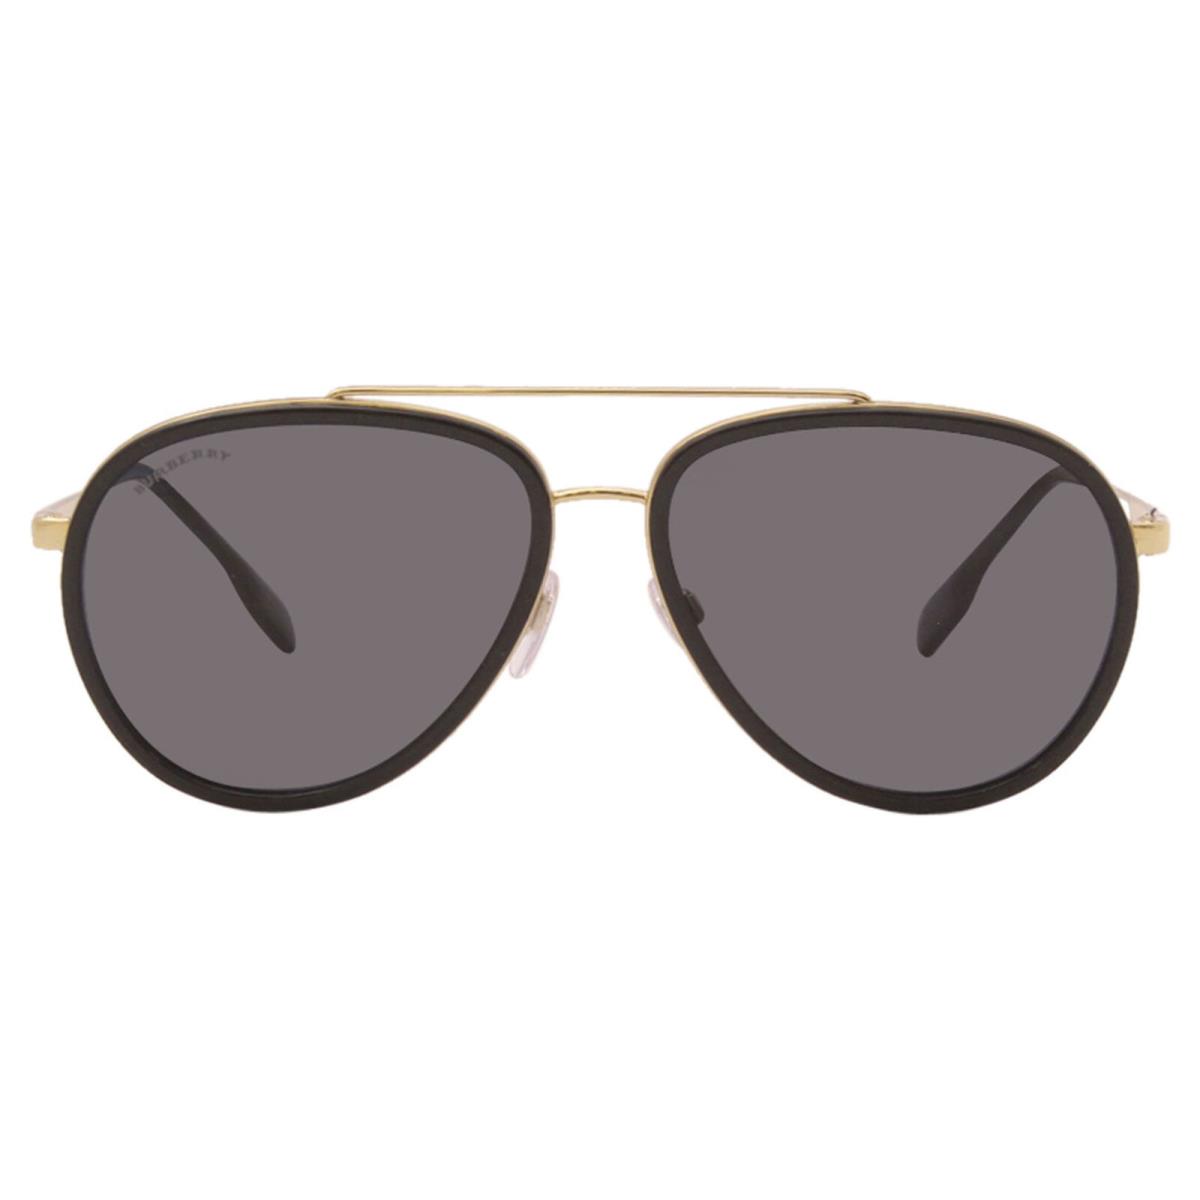 Burberry Oliver B-3125 1017/81 Sunglasses Men`s Gold/dark Grey Polarized Lenses